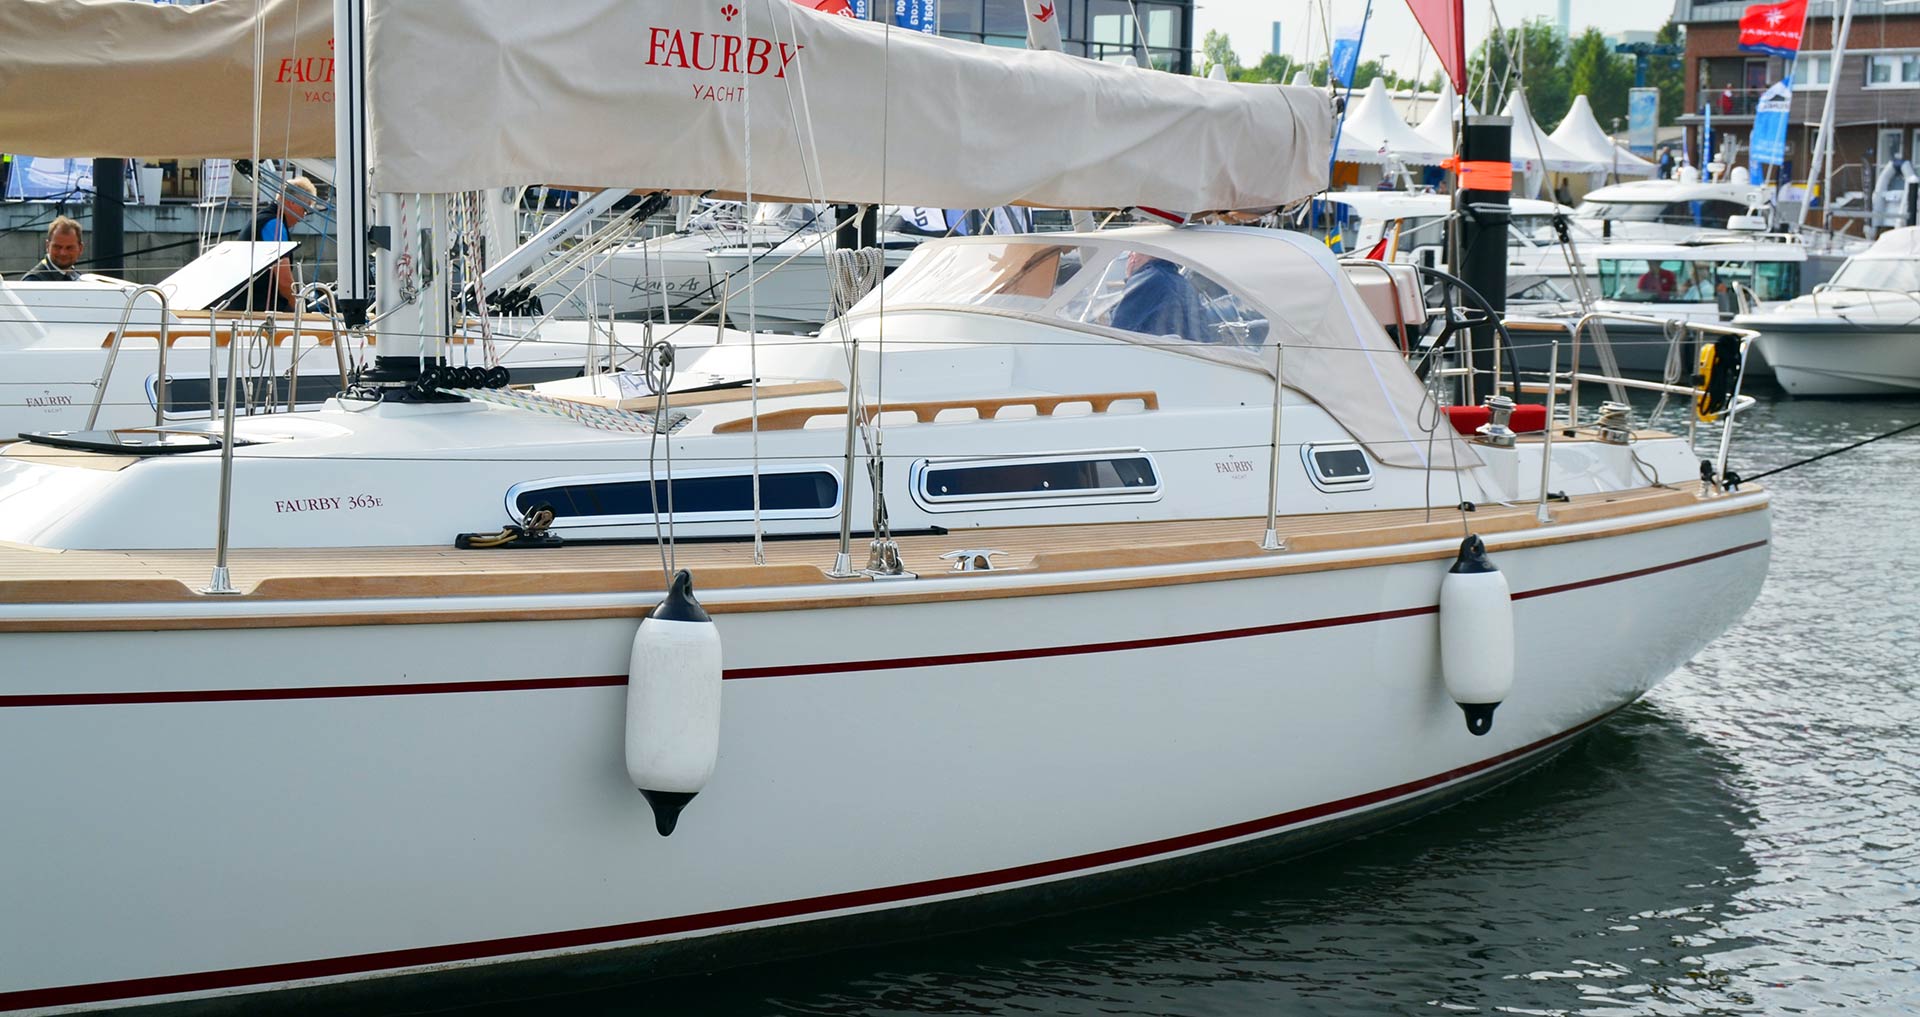 faurby yacht fotos